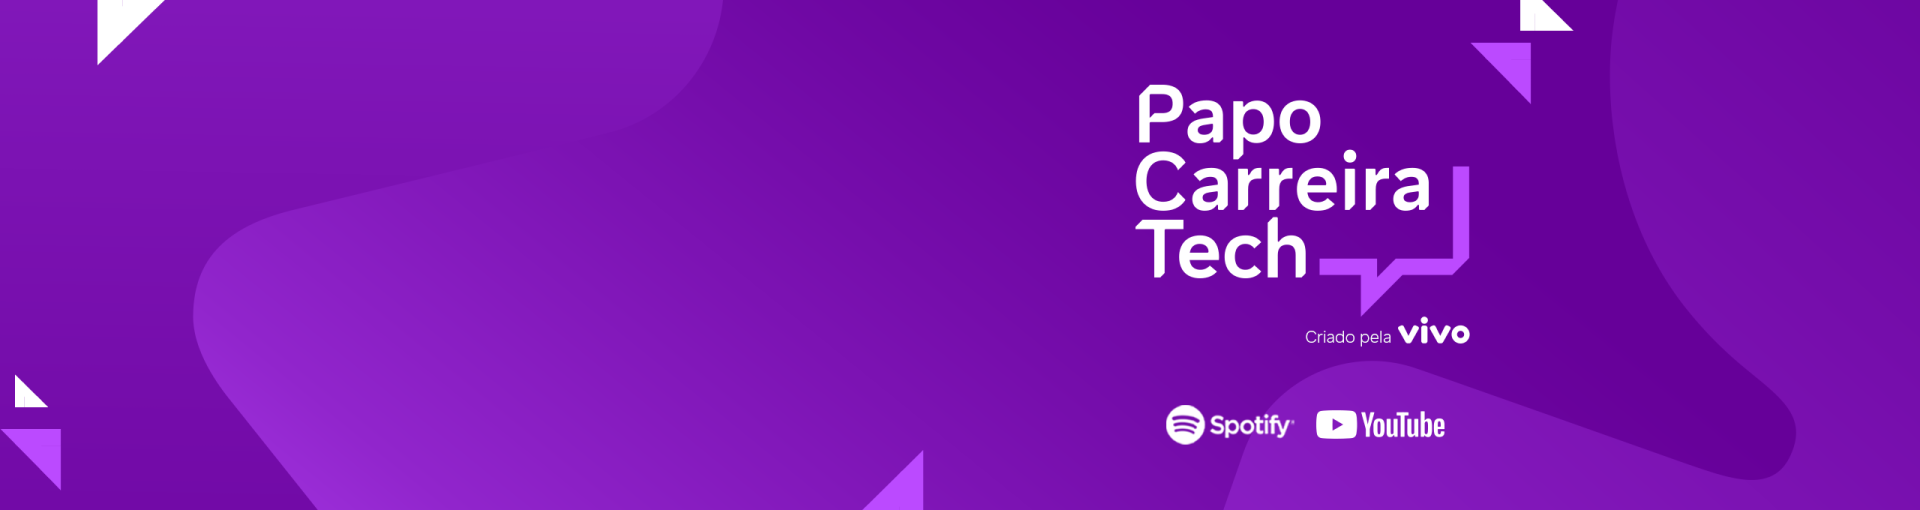 banner divulgando o podcast Papo Carreira Tech